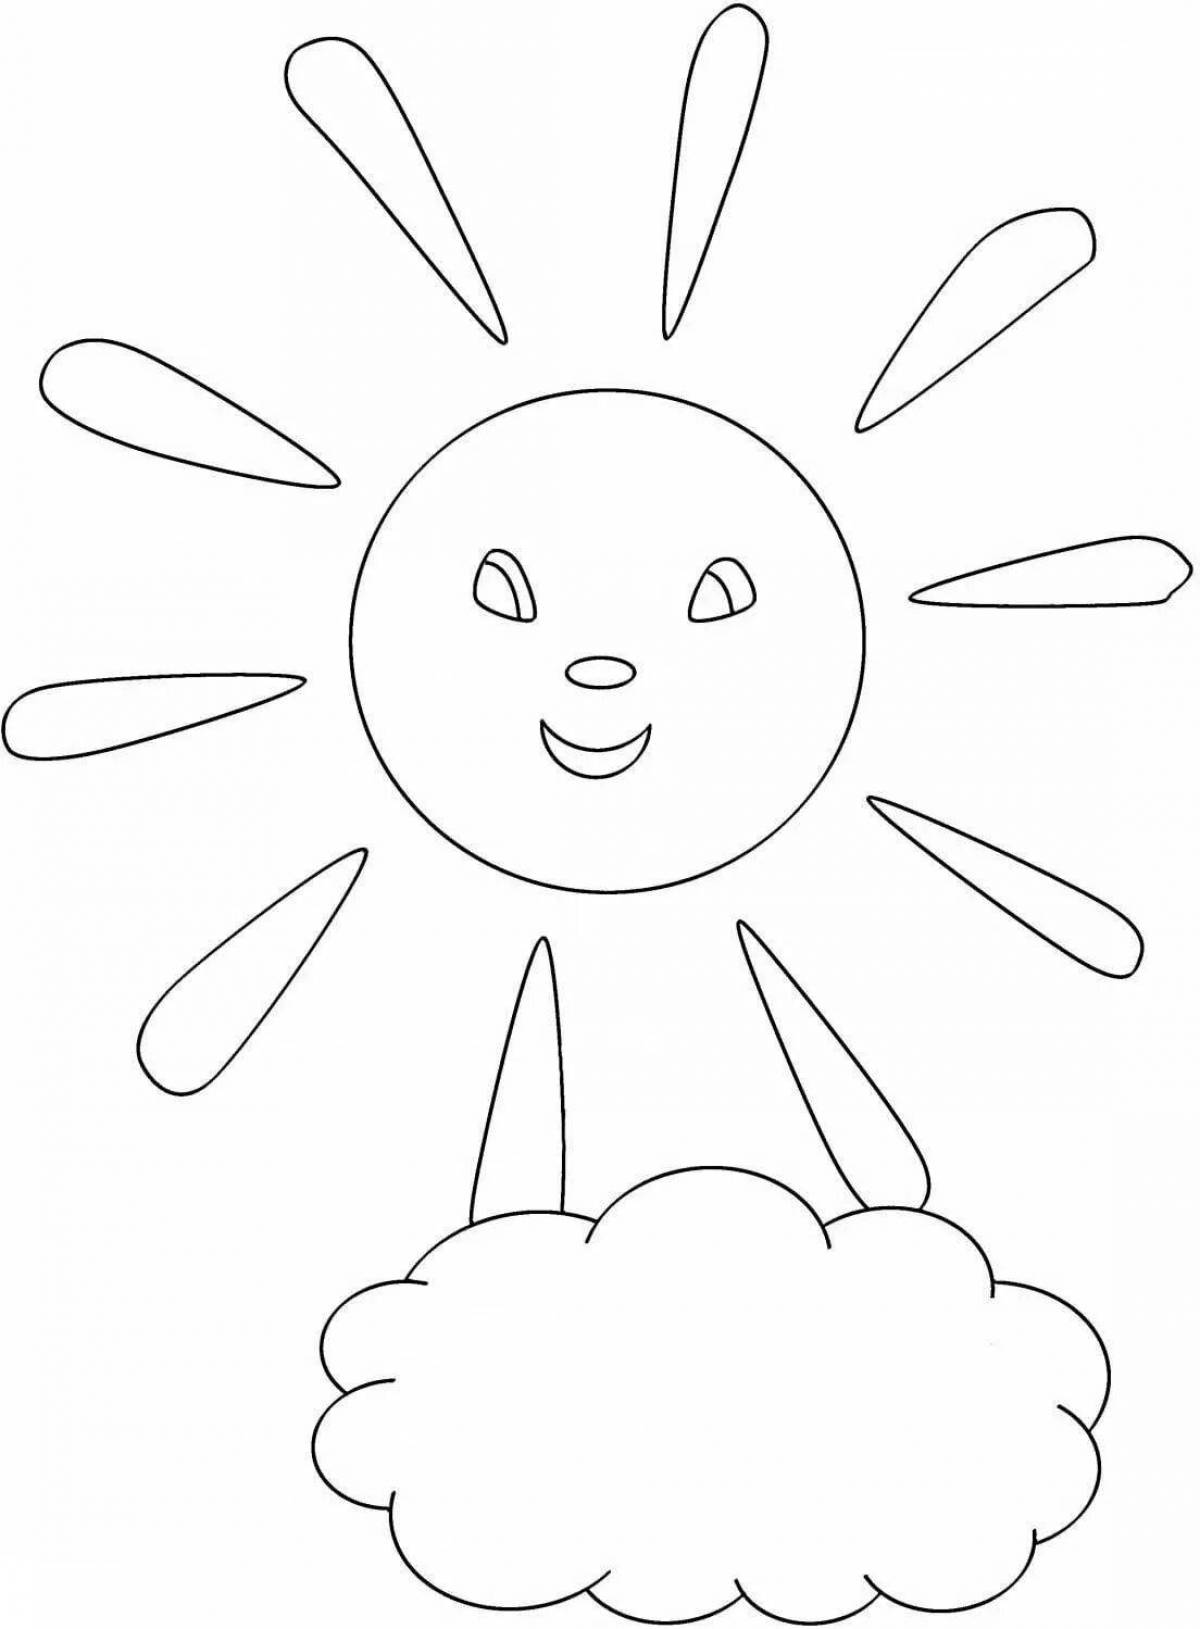 Светящаяся раскраска солнце для детей 4-5 лет